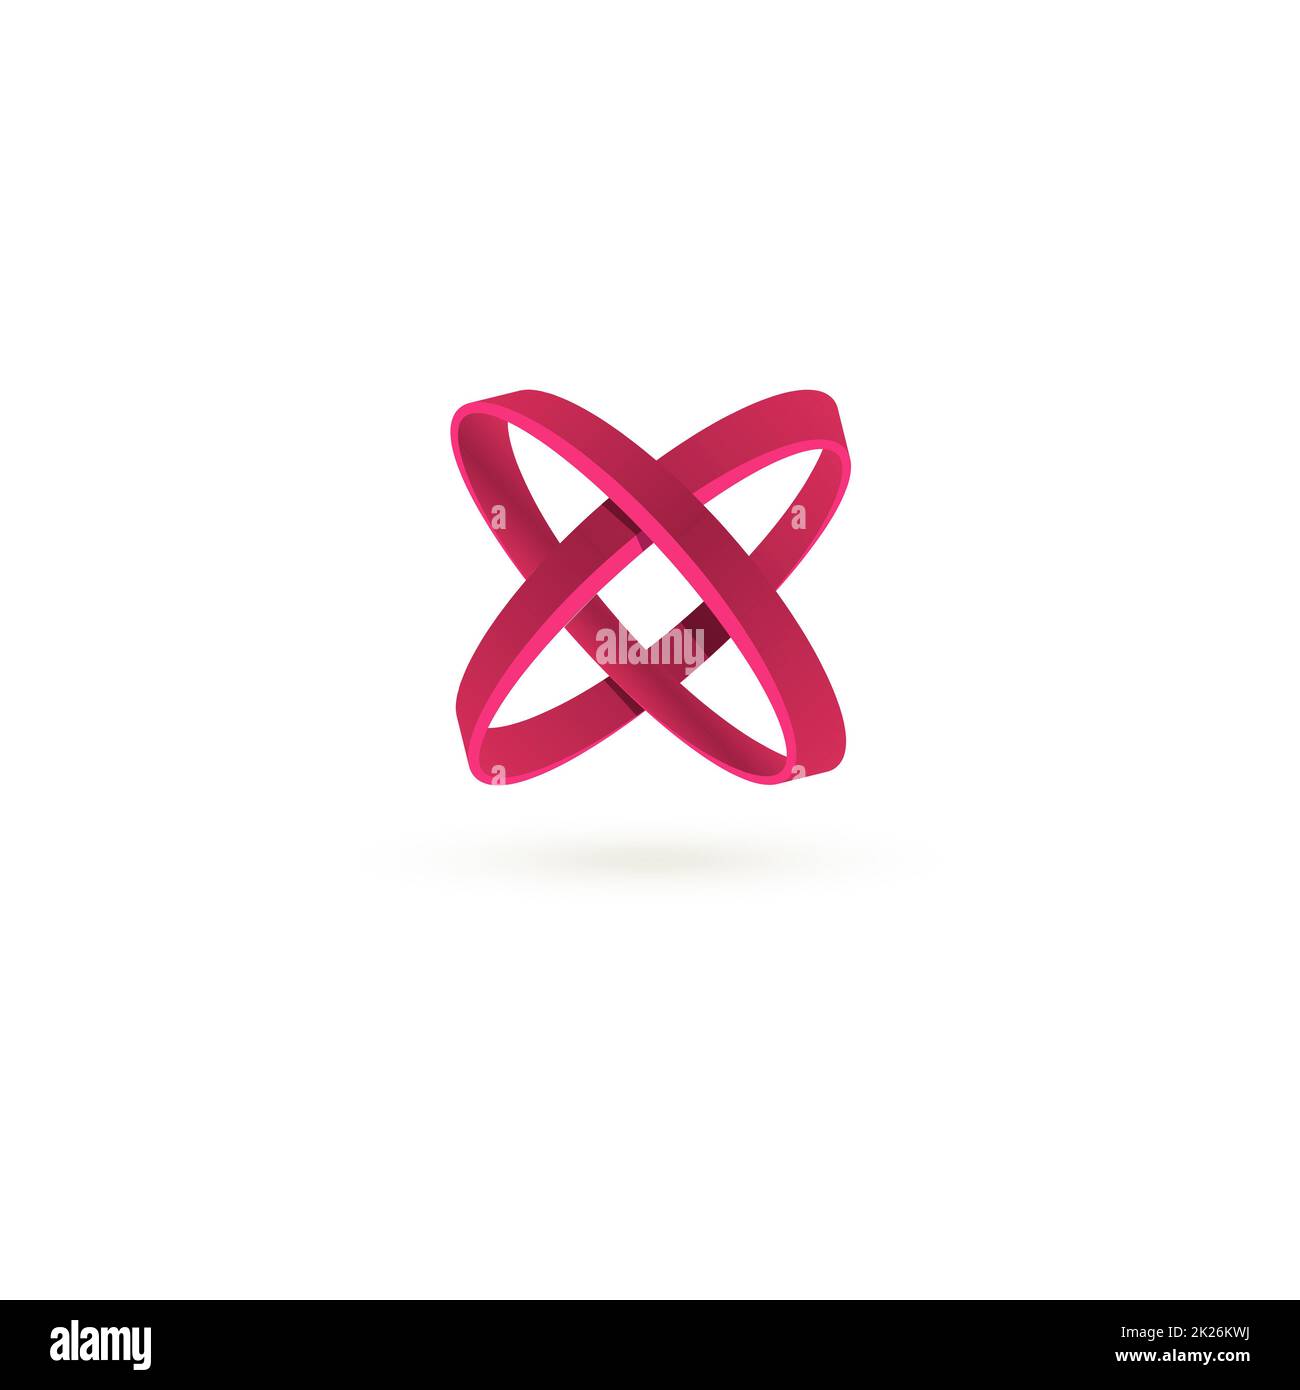 Isolierte purpurrote Farbe Kreuz Vektor-Logo. Abstrakte Kreise auf dem weißen Hintergrund. Geometrische Element. Buchstaben X. Stockfoto